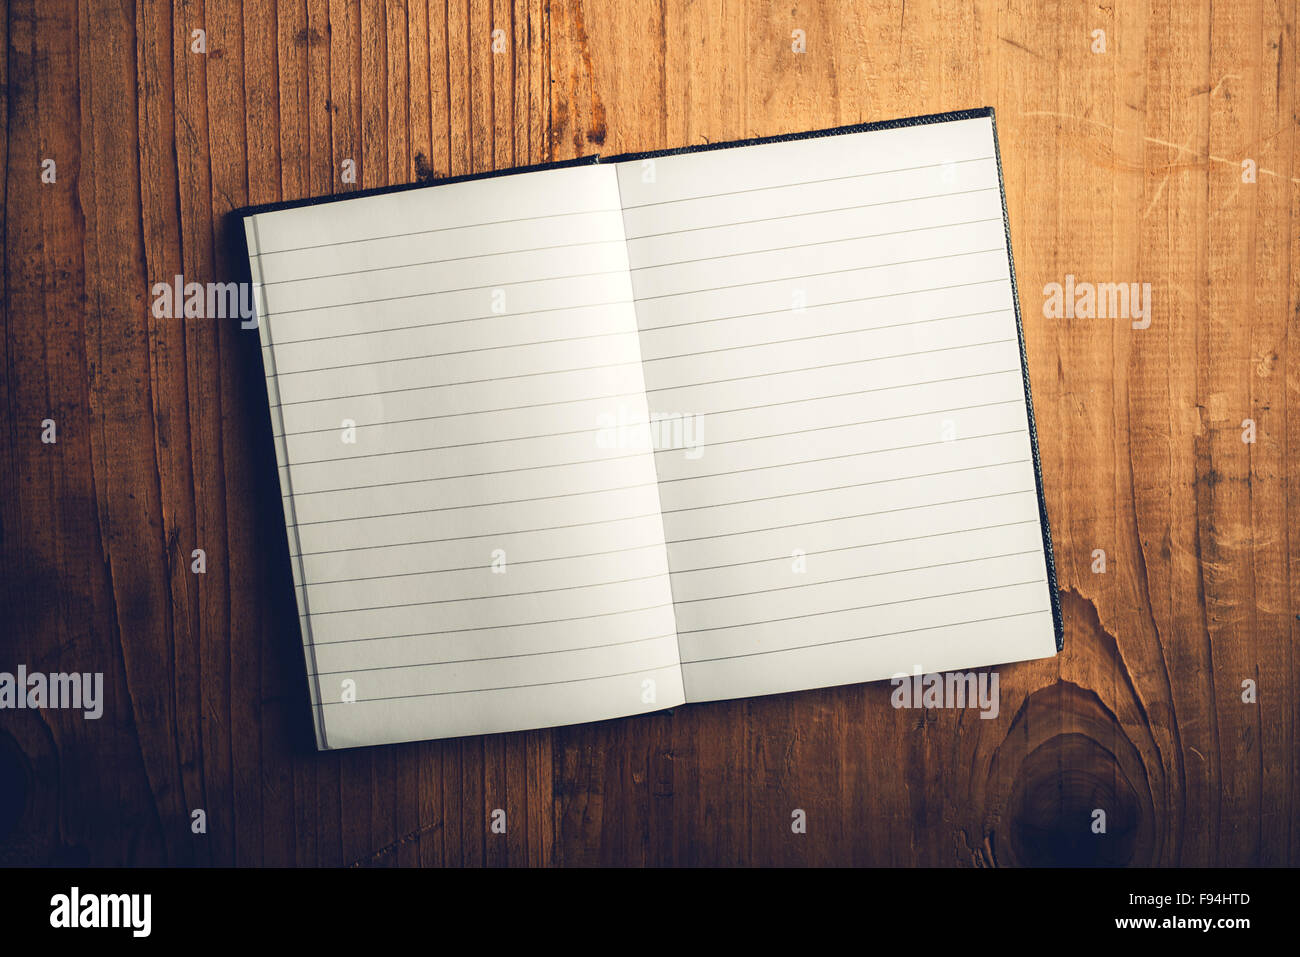 Draufsicht der offenen Notebook mit leeren Seiten auf alten hölzernen Schreibtisch, getönten Retro Bild als Textfreiraum Stockfoto